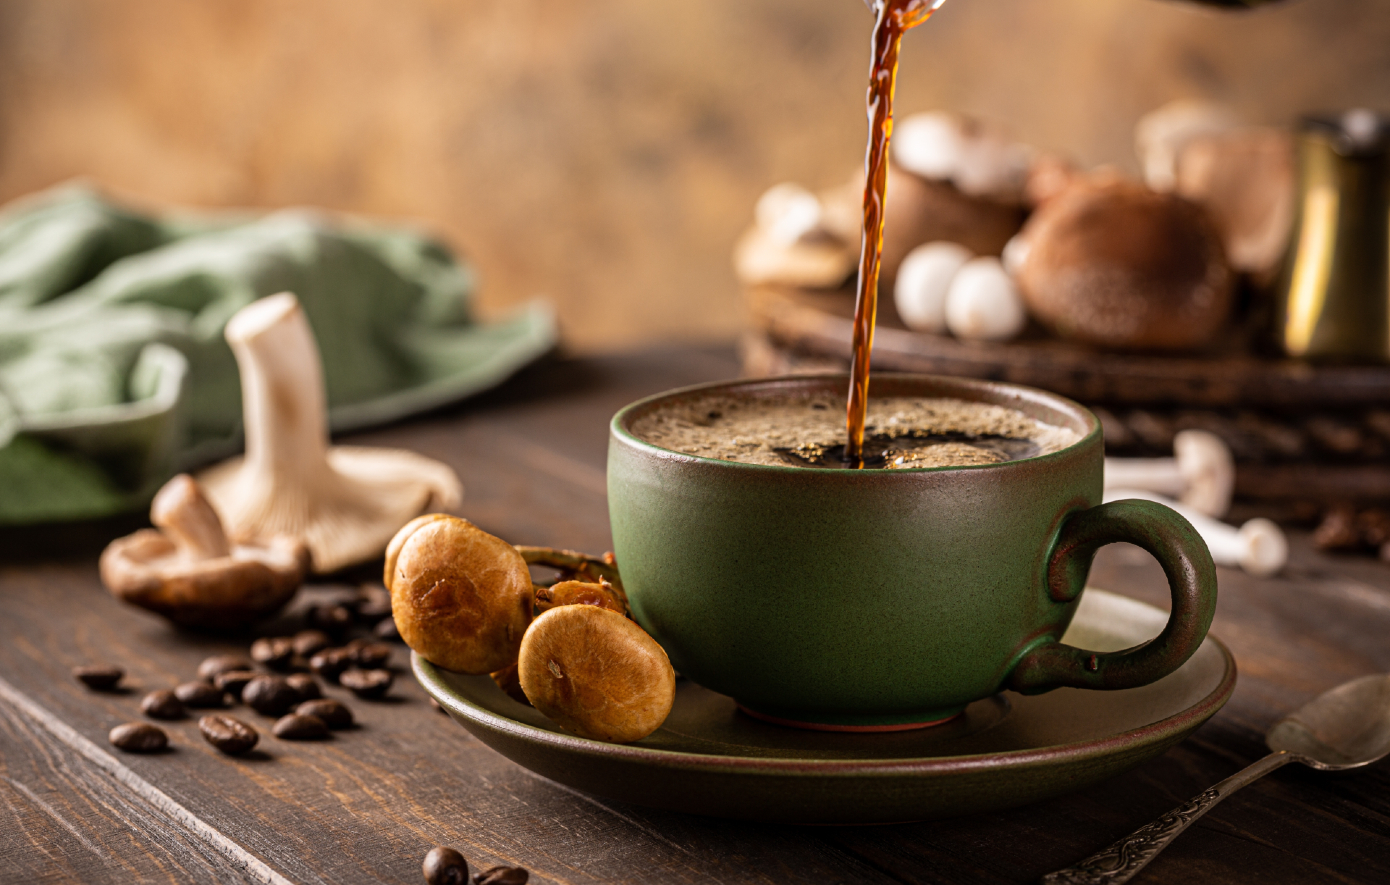 Καφές μανιταριών: Τι είναι και αξίζει να το δοκιμάσετε;